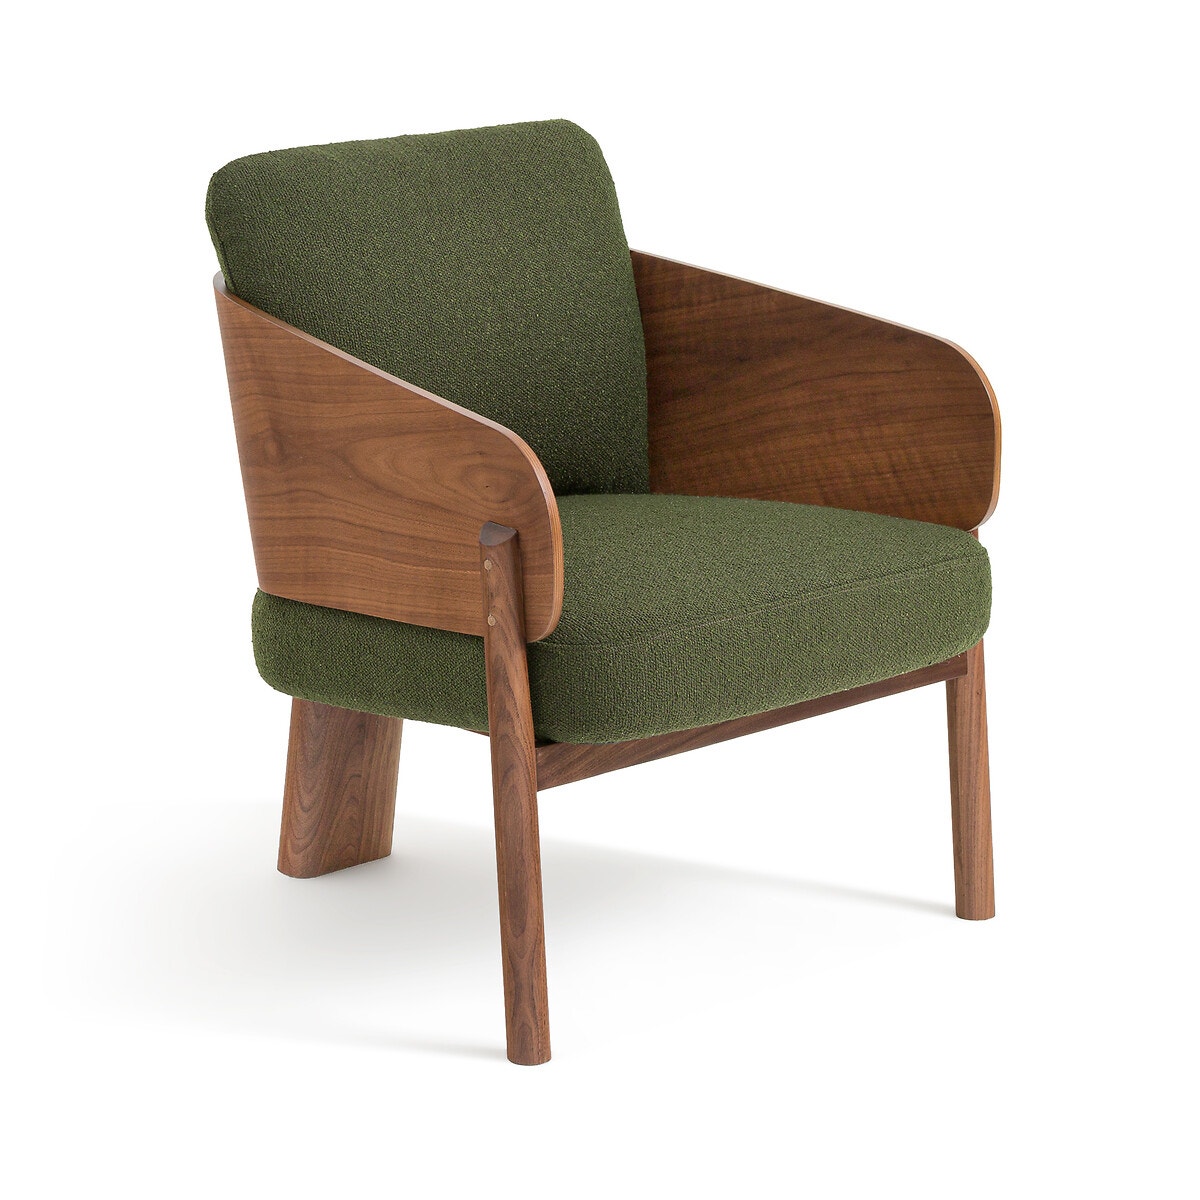 Πολυθρόνα από ξύλο καρυδιάς και μπουκλέ ταπετσαρία, Marais, σχεδίασης E. Gallina